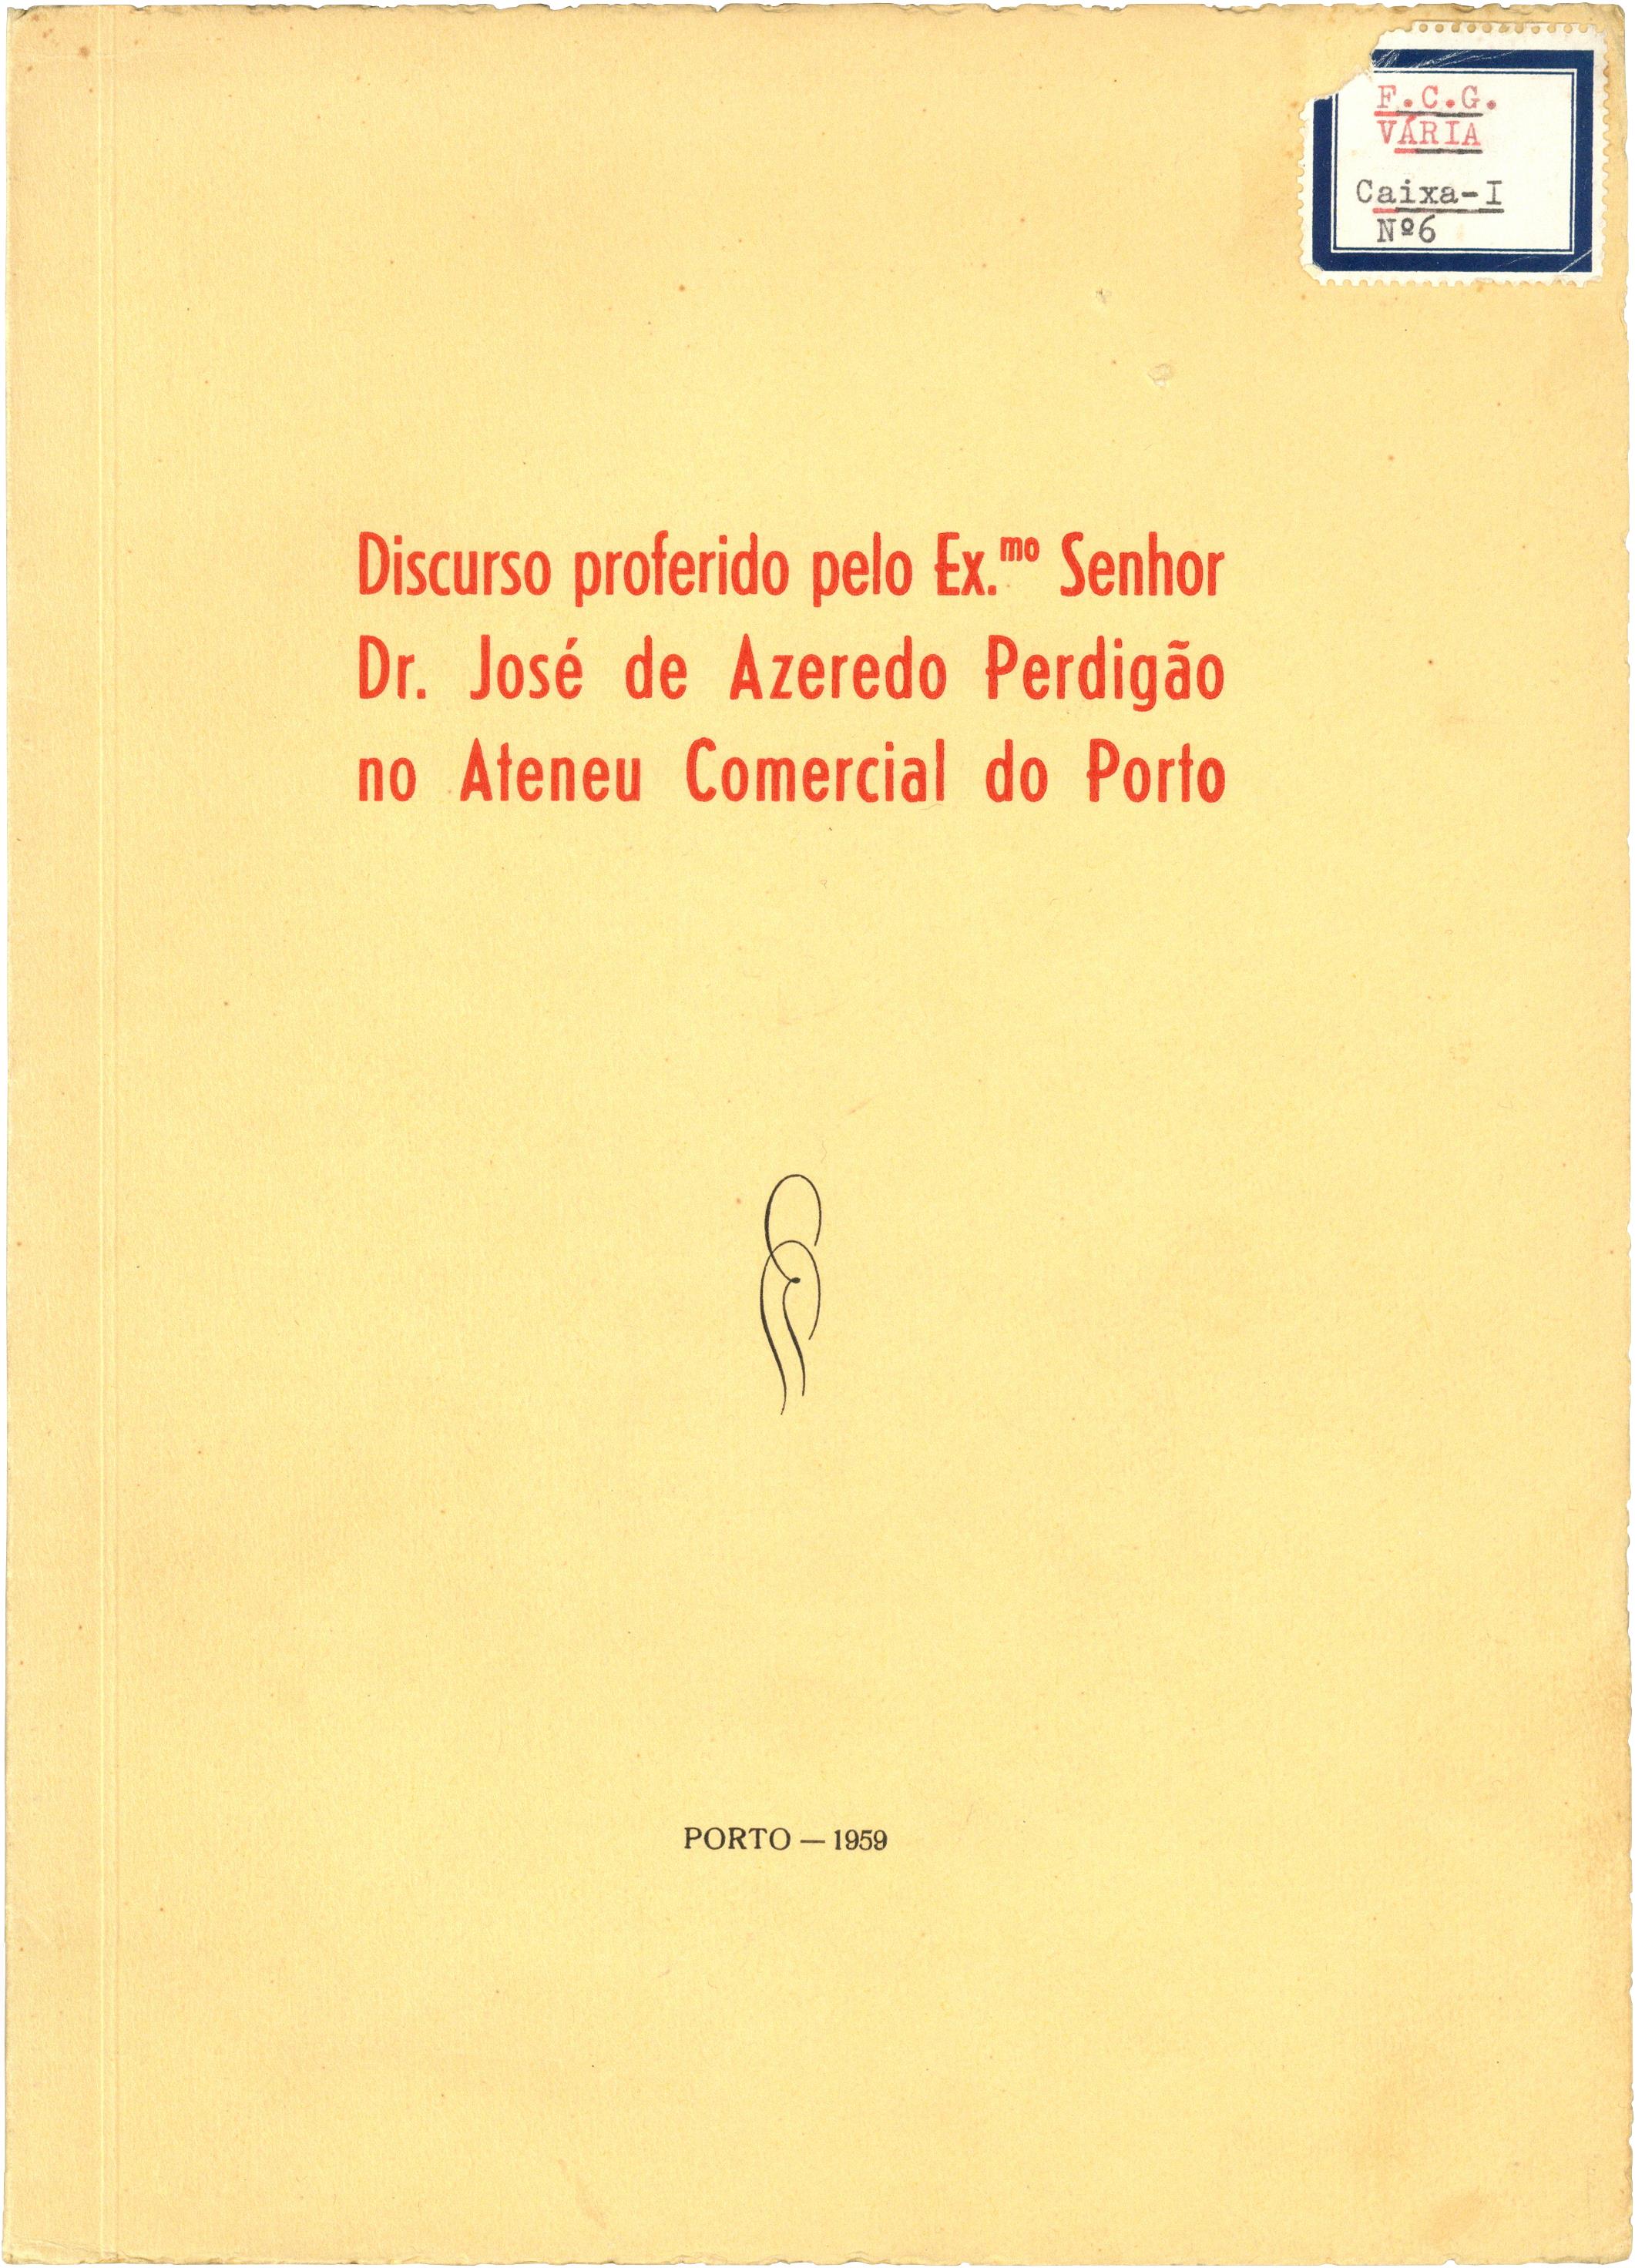 Discurso proferido pelo Ex.mo Senhor Dr. José de Azeredo Perdigão no Ateneu Comercial do Porto